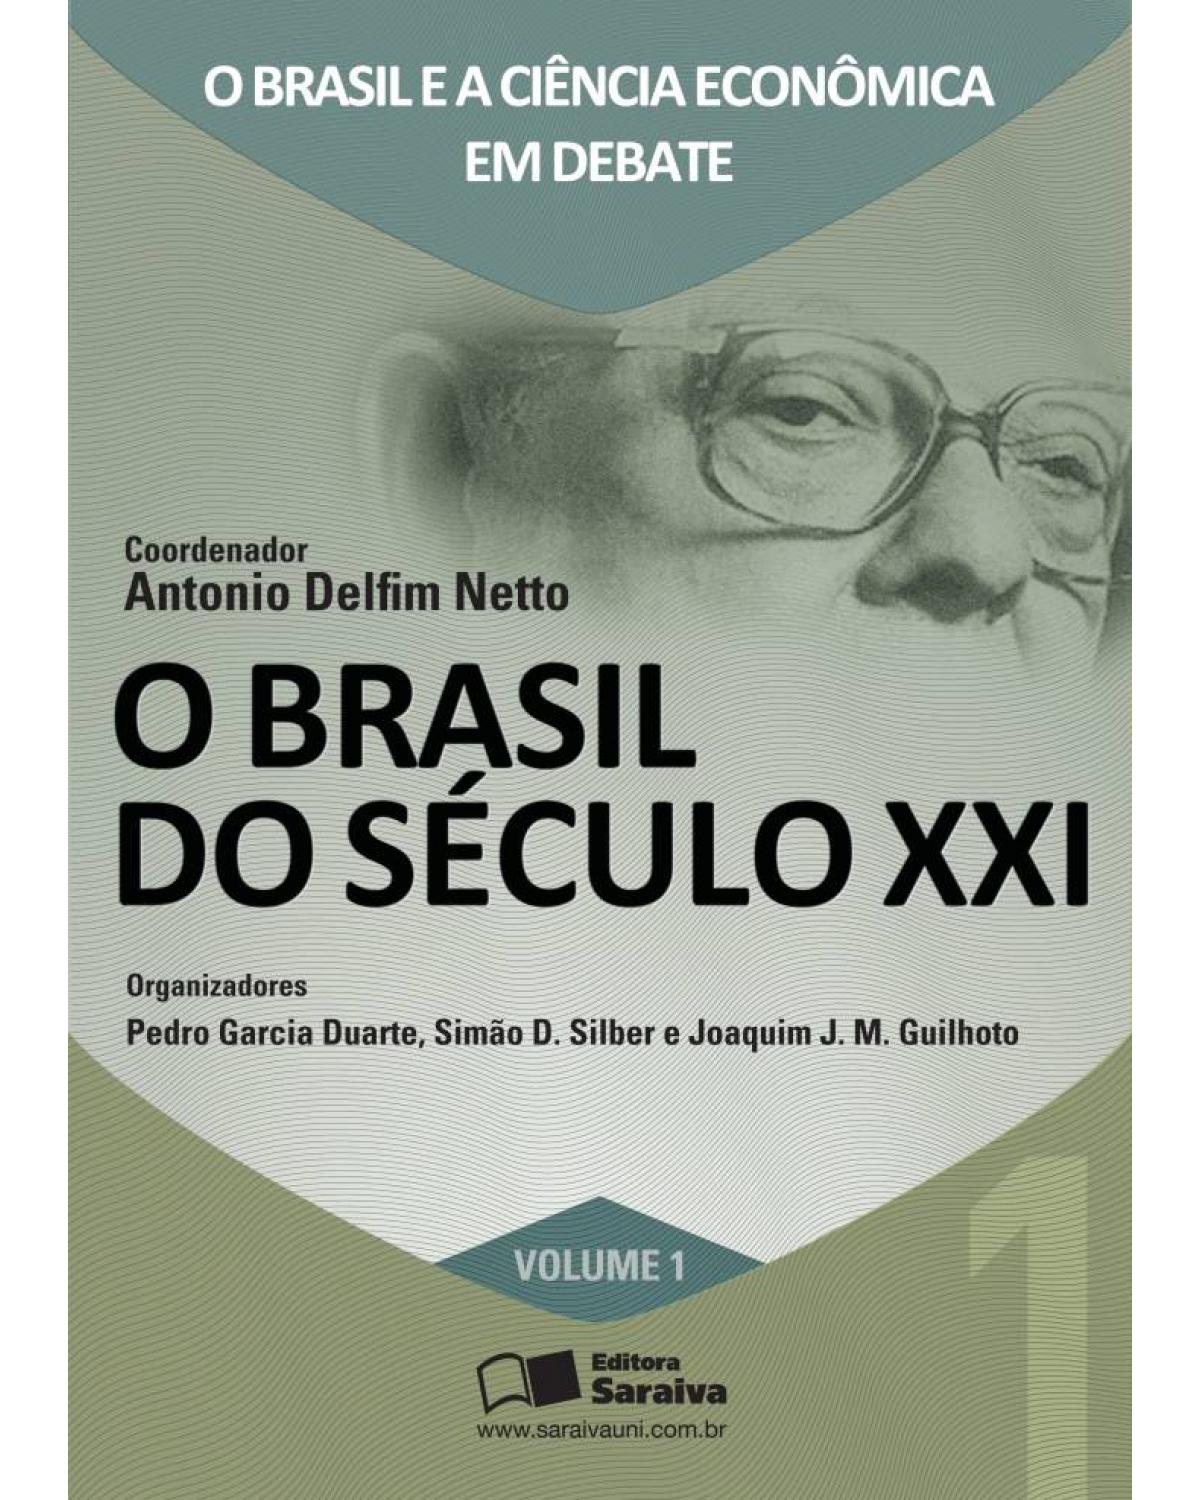 O Brasil do século XXI - Volume 1: o Brasil e a ciência econômica em debate - 1ª Edição | 2011